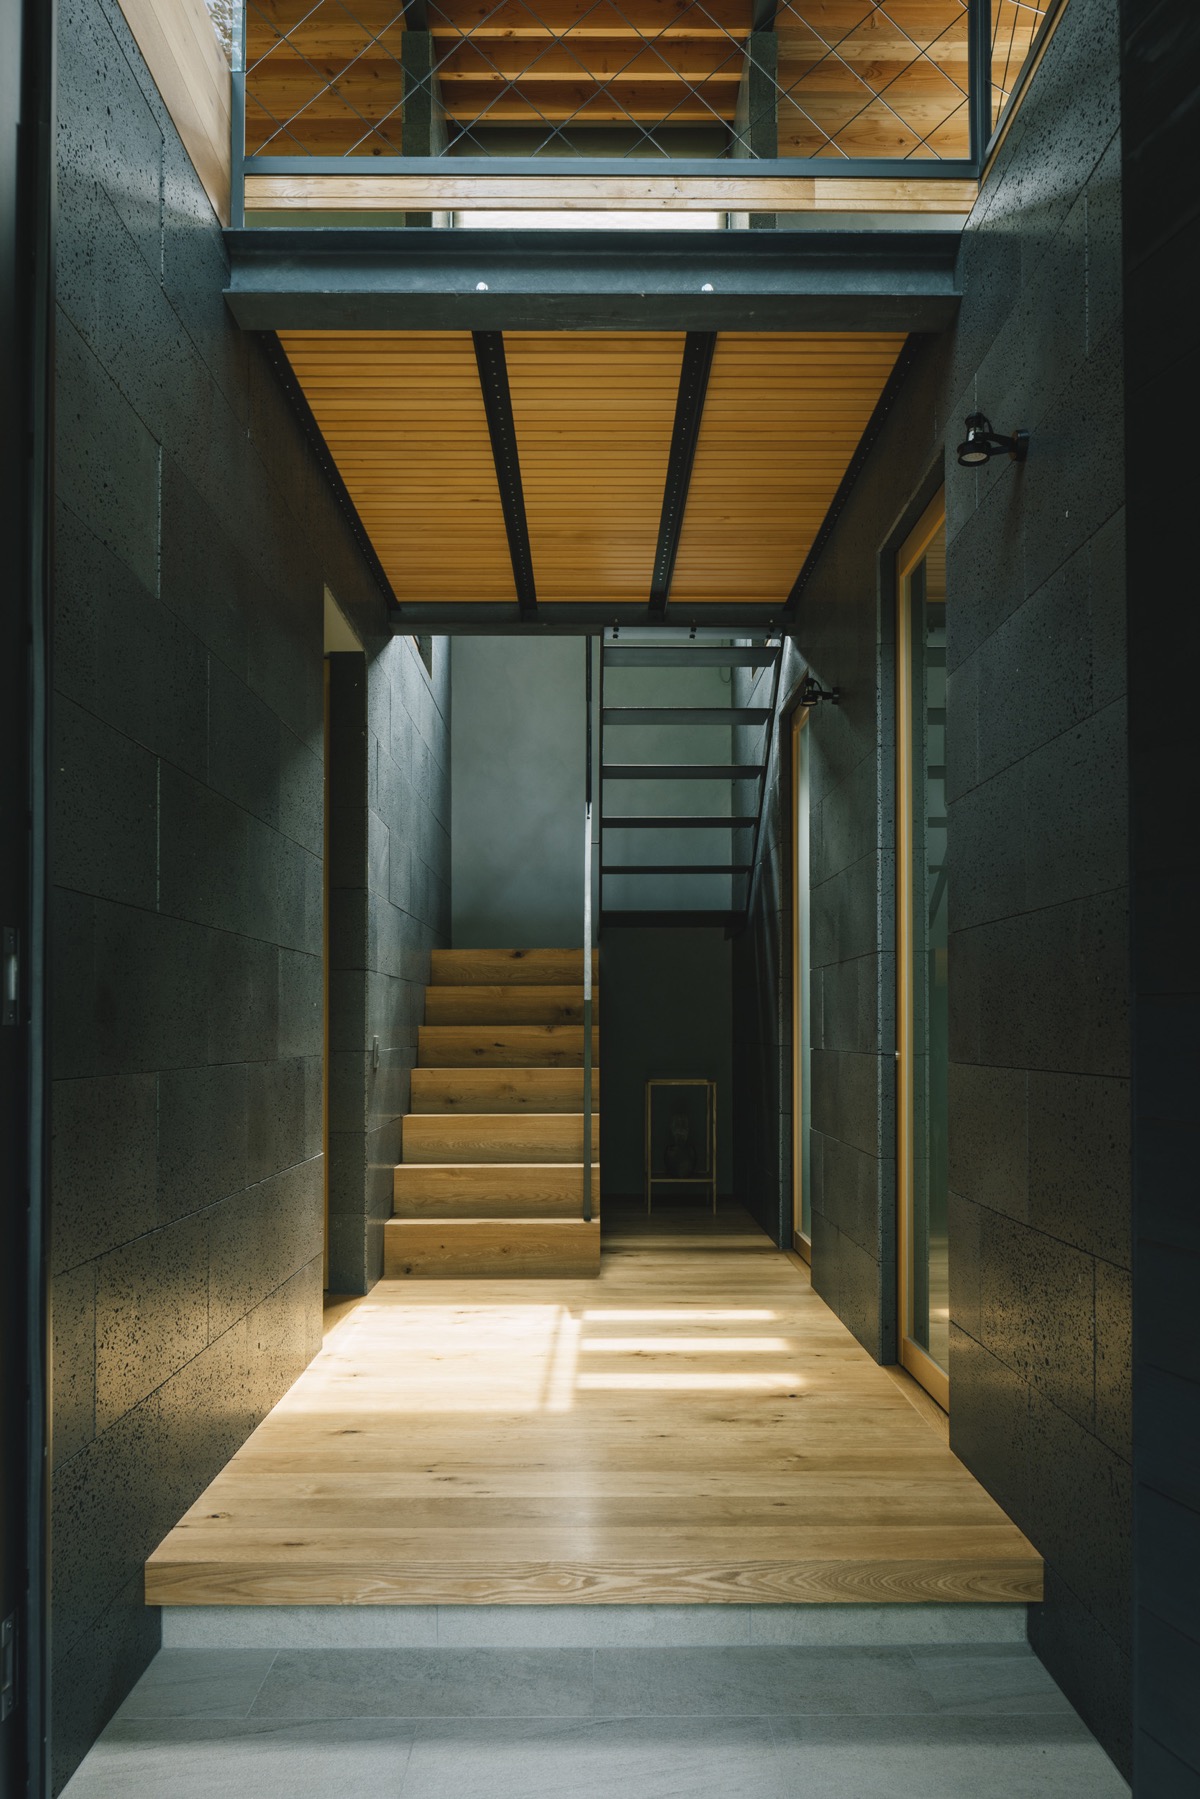 Thiết kế cầu thang bằng gỗ và kim loại phong cách công nghiệp. Các bậc thang bằng kim loại mở cho phép ánh sáng xuyên qua.